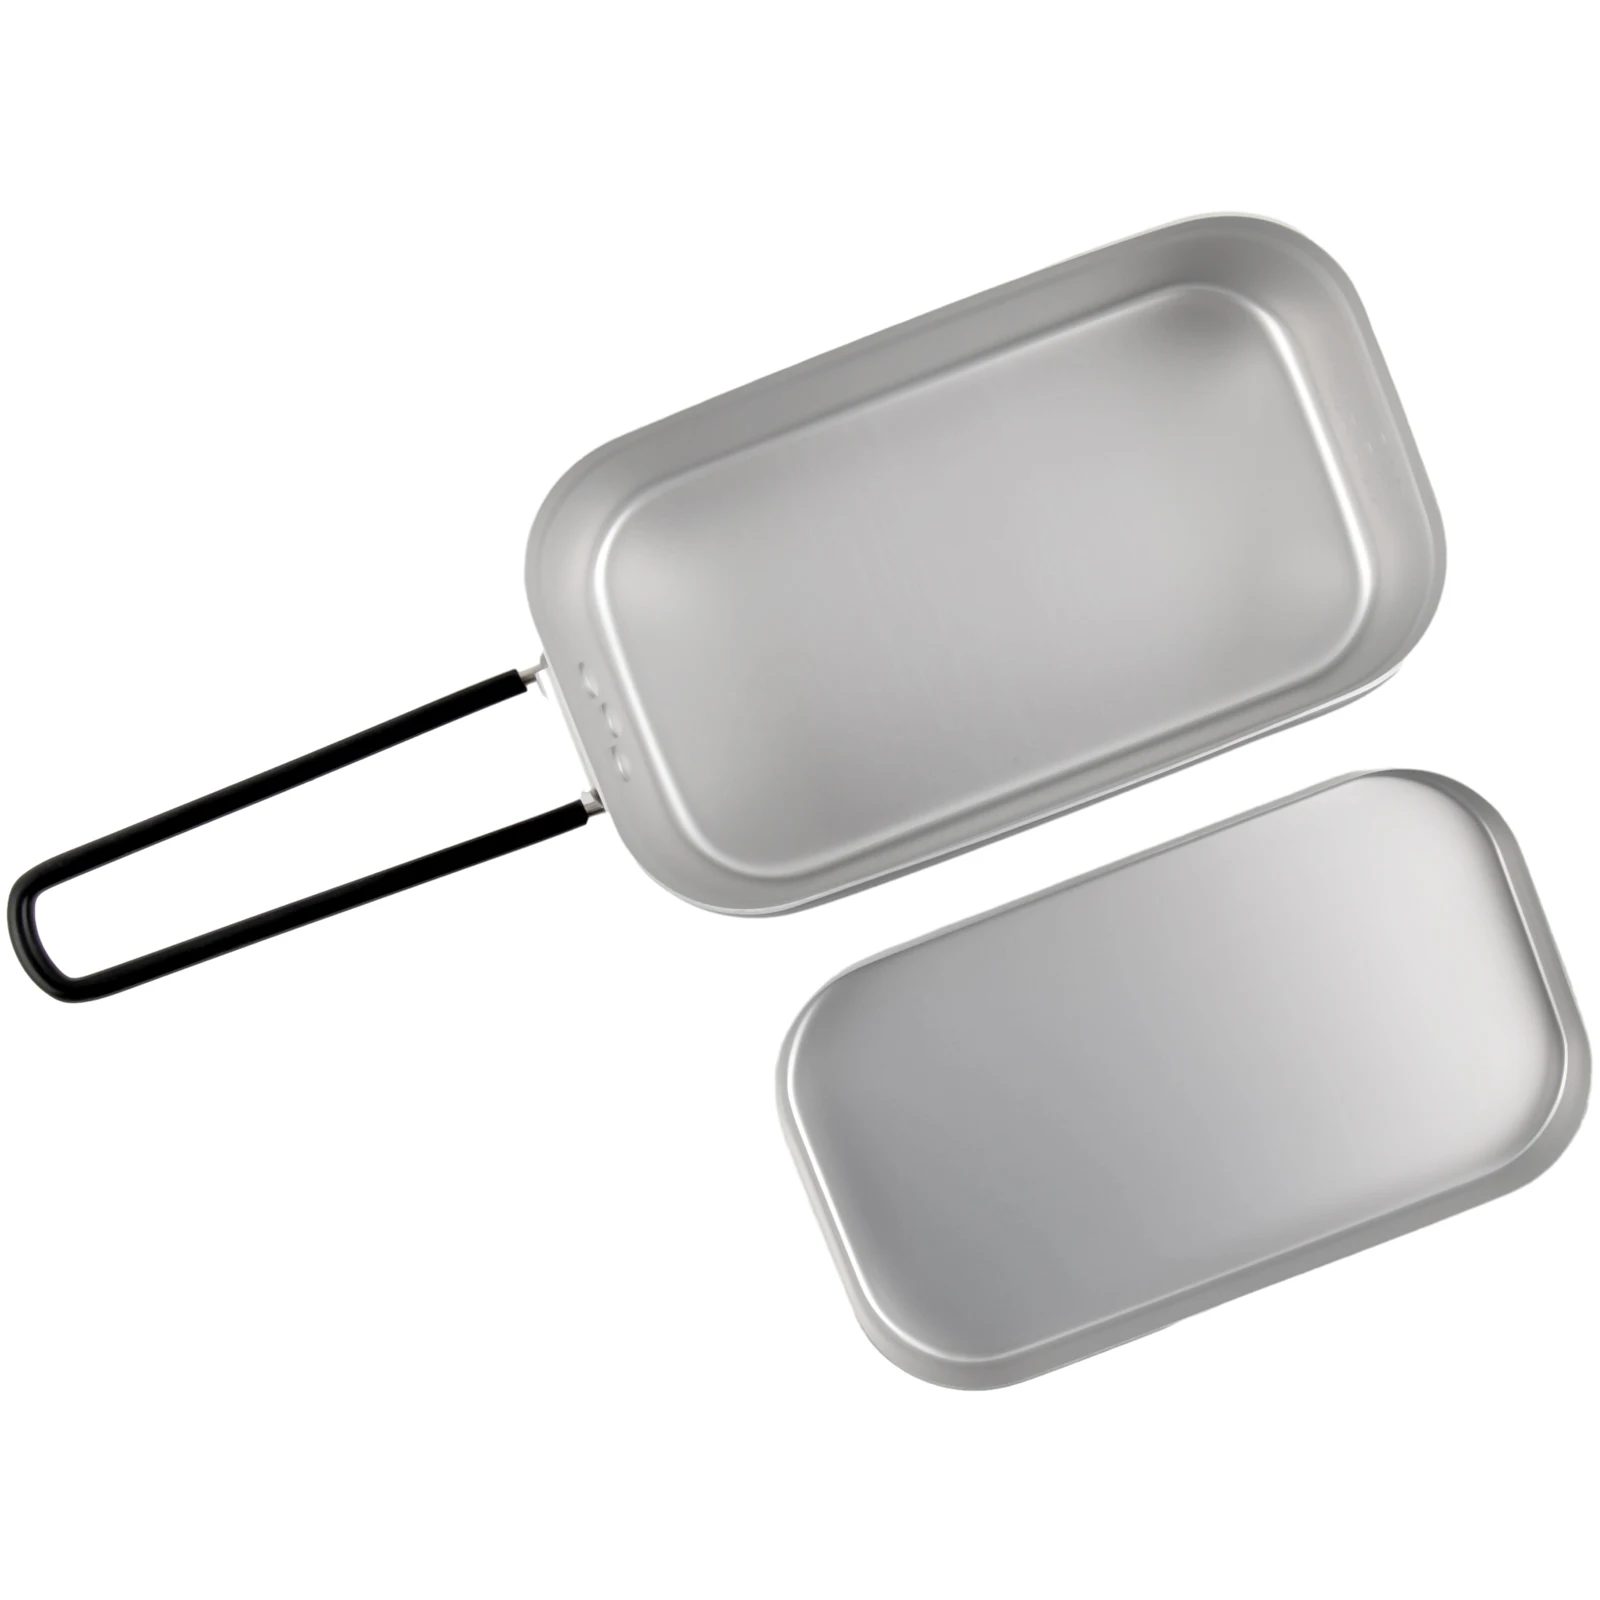 

Bento Box Ланч-бокс с ручкой 2-в-1 800 мл Алюминиевая кухонная посуда для приготовления пищи прочный складной контейнер для хранения продуктов